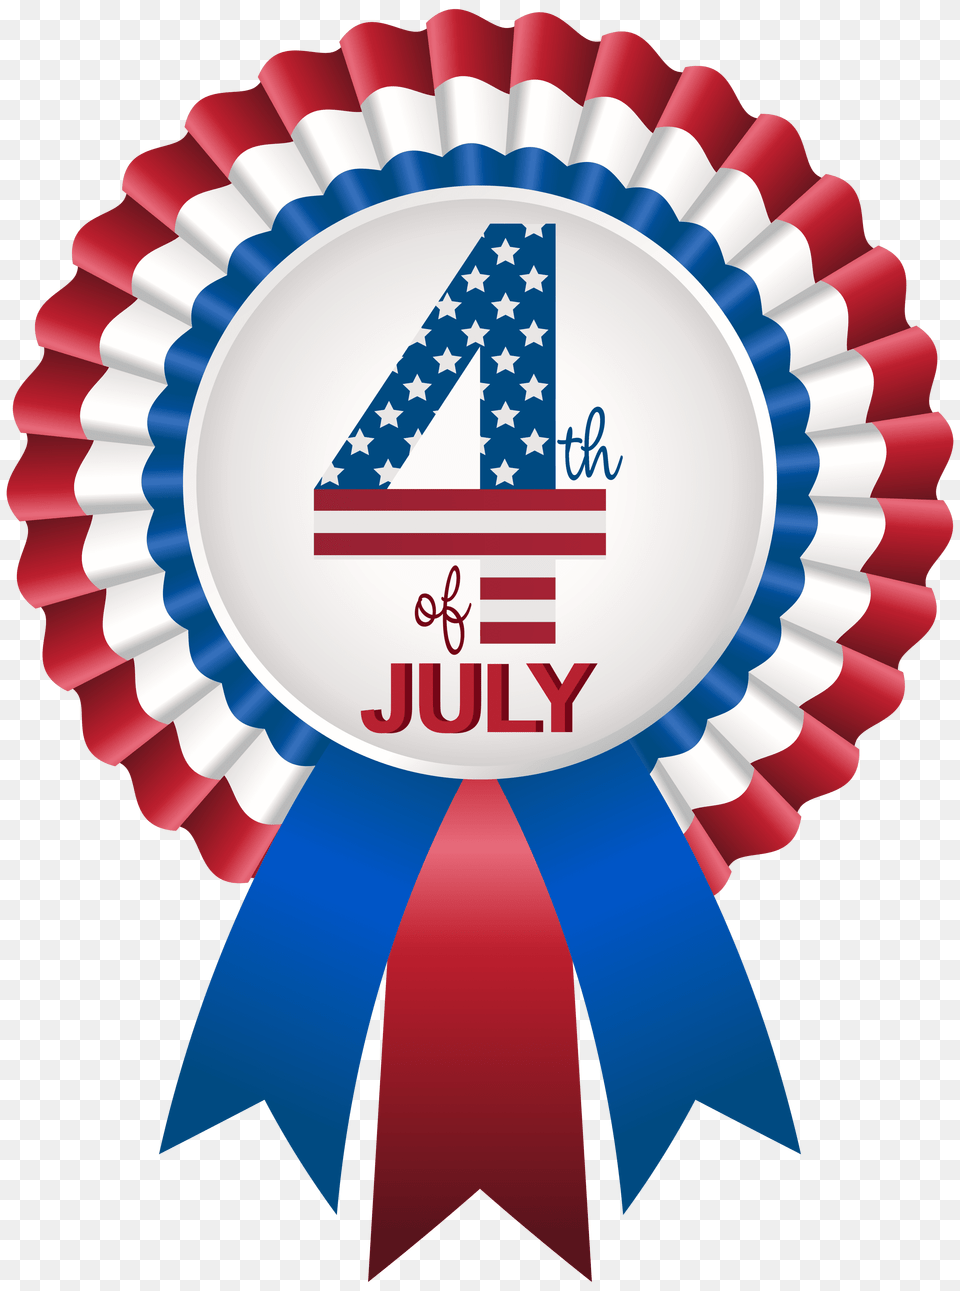 Of July Rosette Clip Art Image, Badge, Logo, Symbol, Dynamite Free Png Download